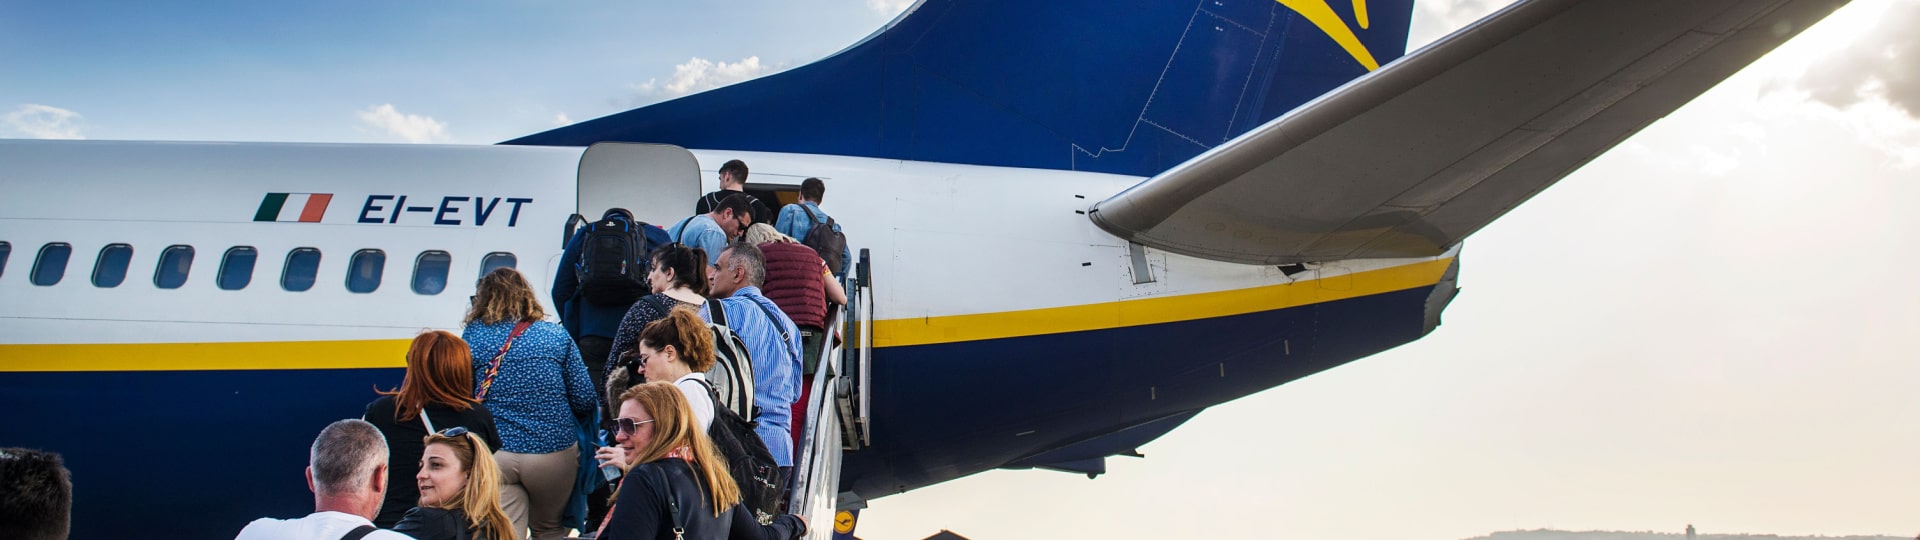 Ryanair čeká nárůst počtu cestujících